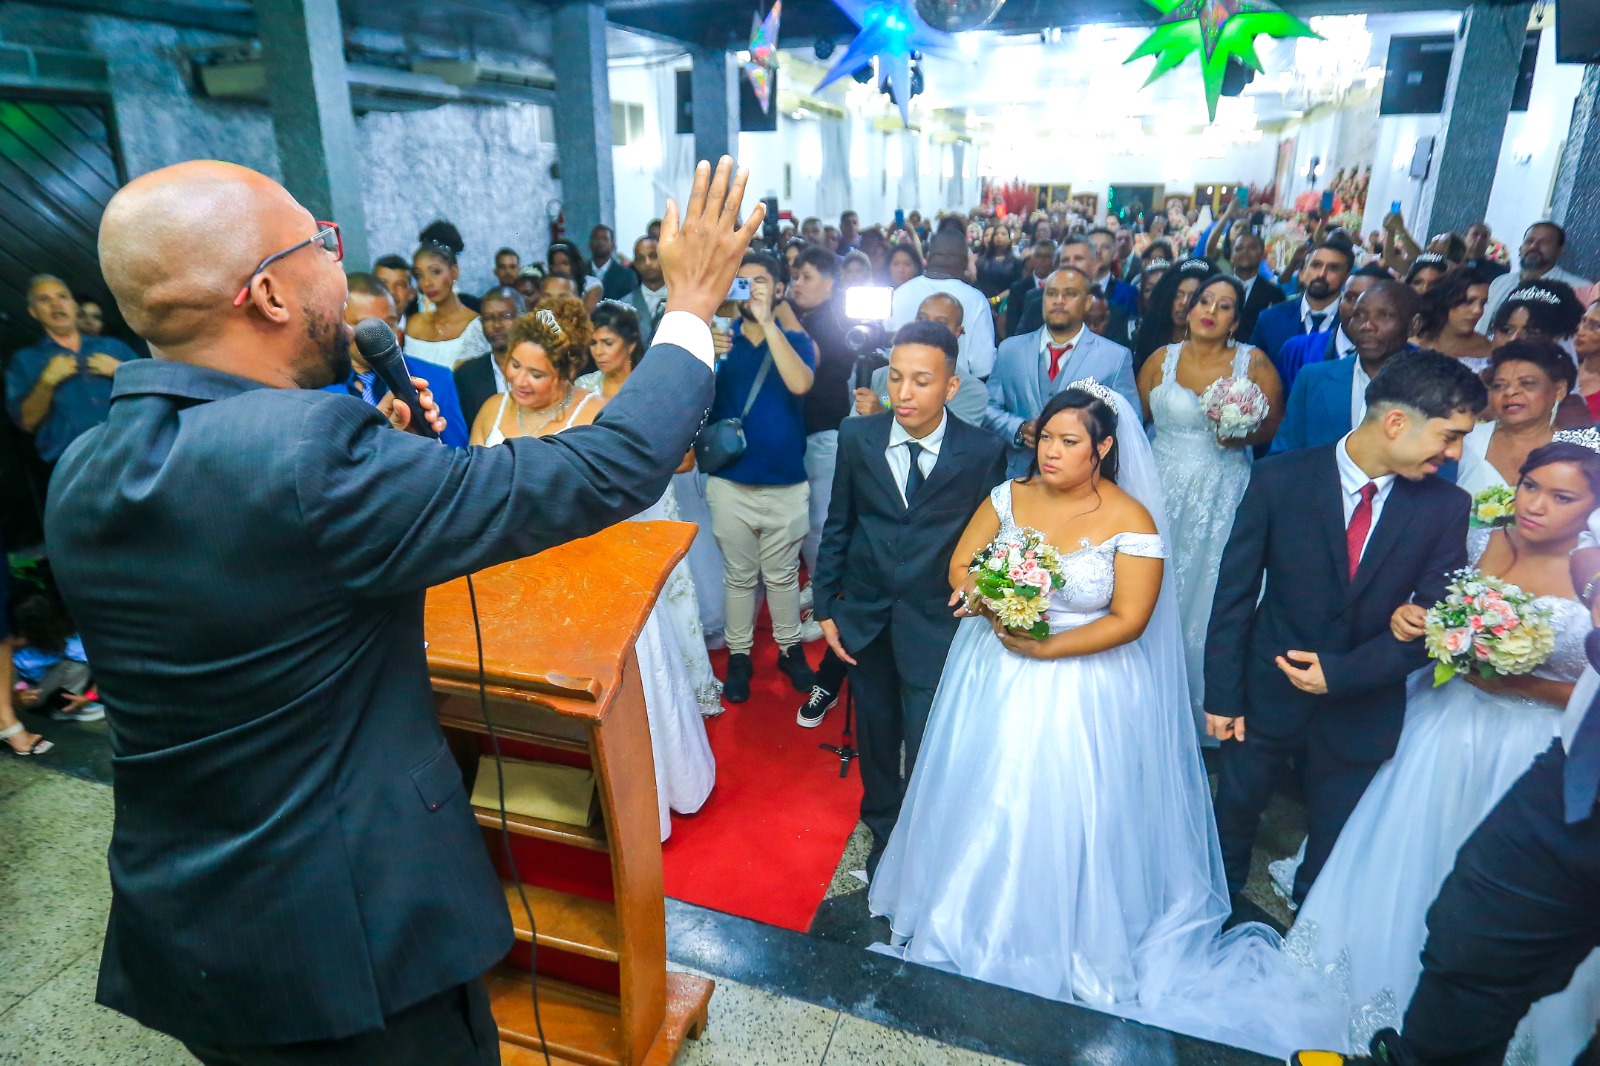 A cerimônia religiosa do casamento contou com bênçãos ecumênicas/Rafael Barreto/PMBR